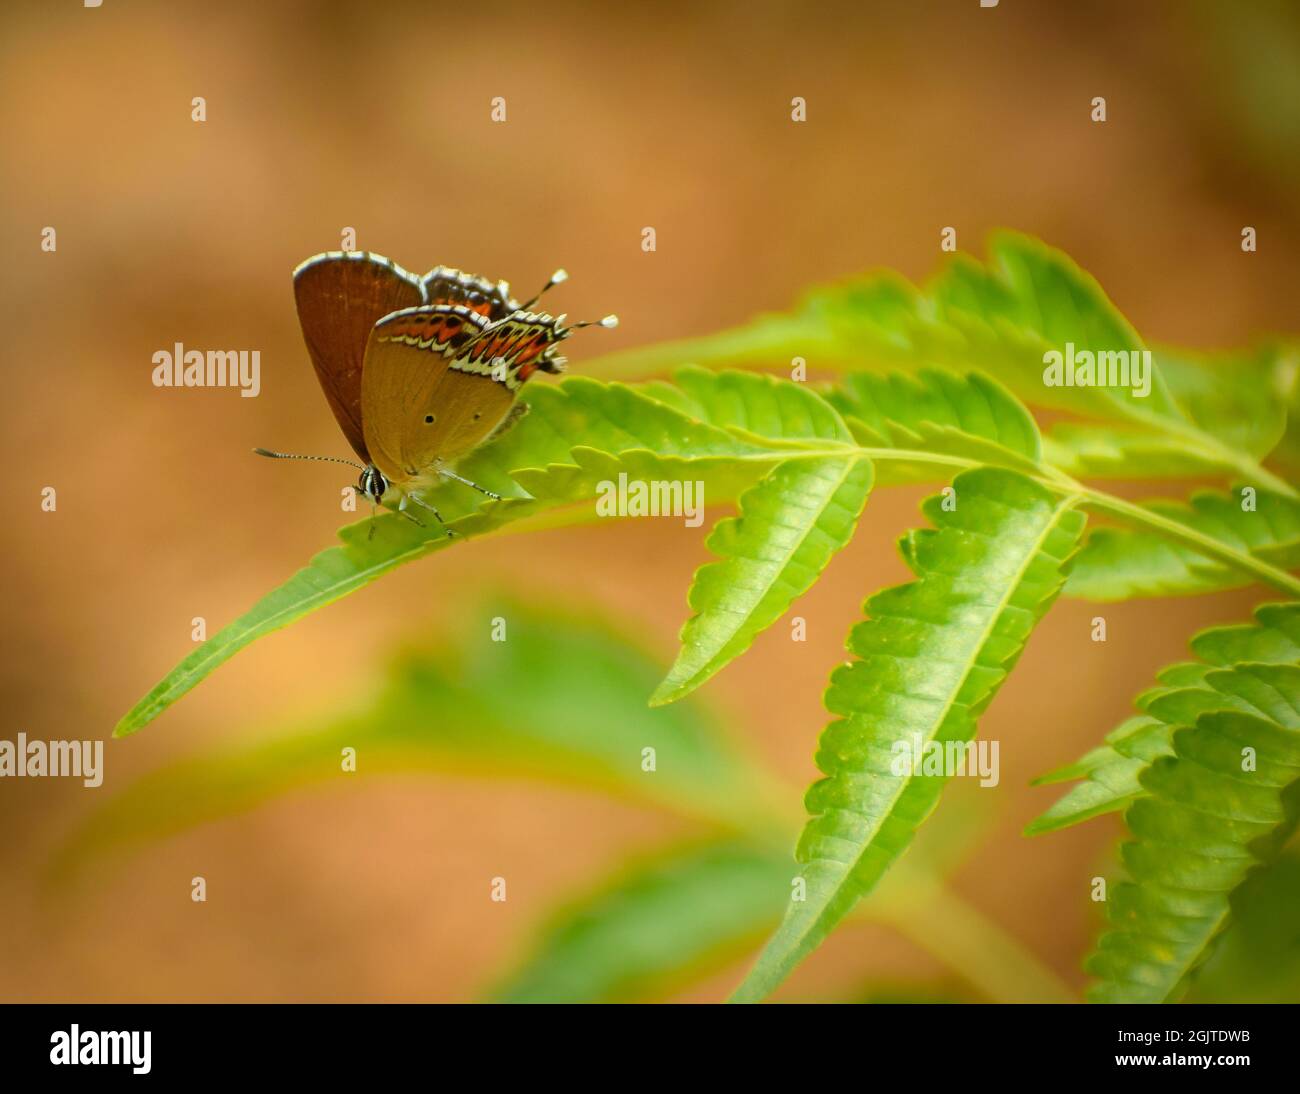 Nahaufnahme eines schönen Schmetterlings auf dem Blatt.Sauerampfer-Saphir ( Heliophorus sena ). Stockfoto